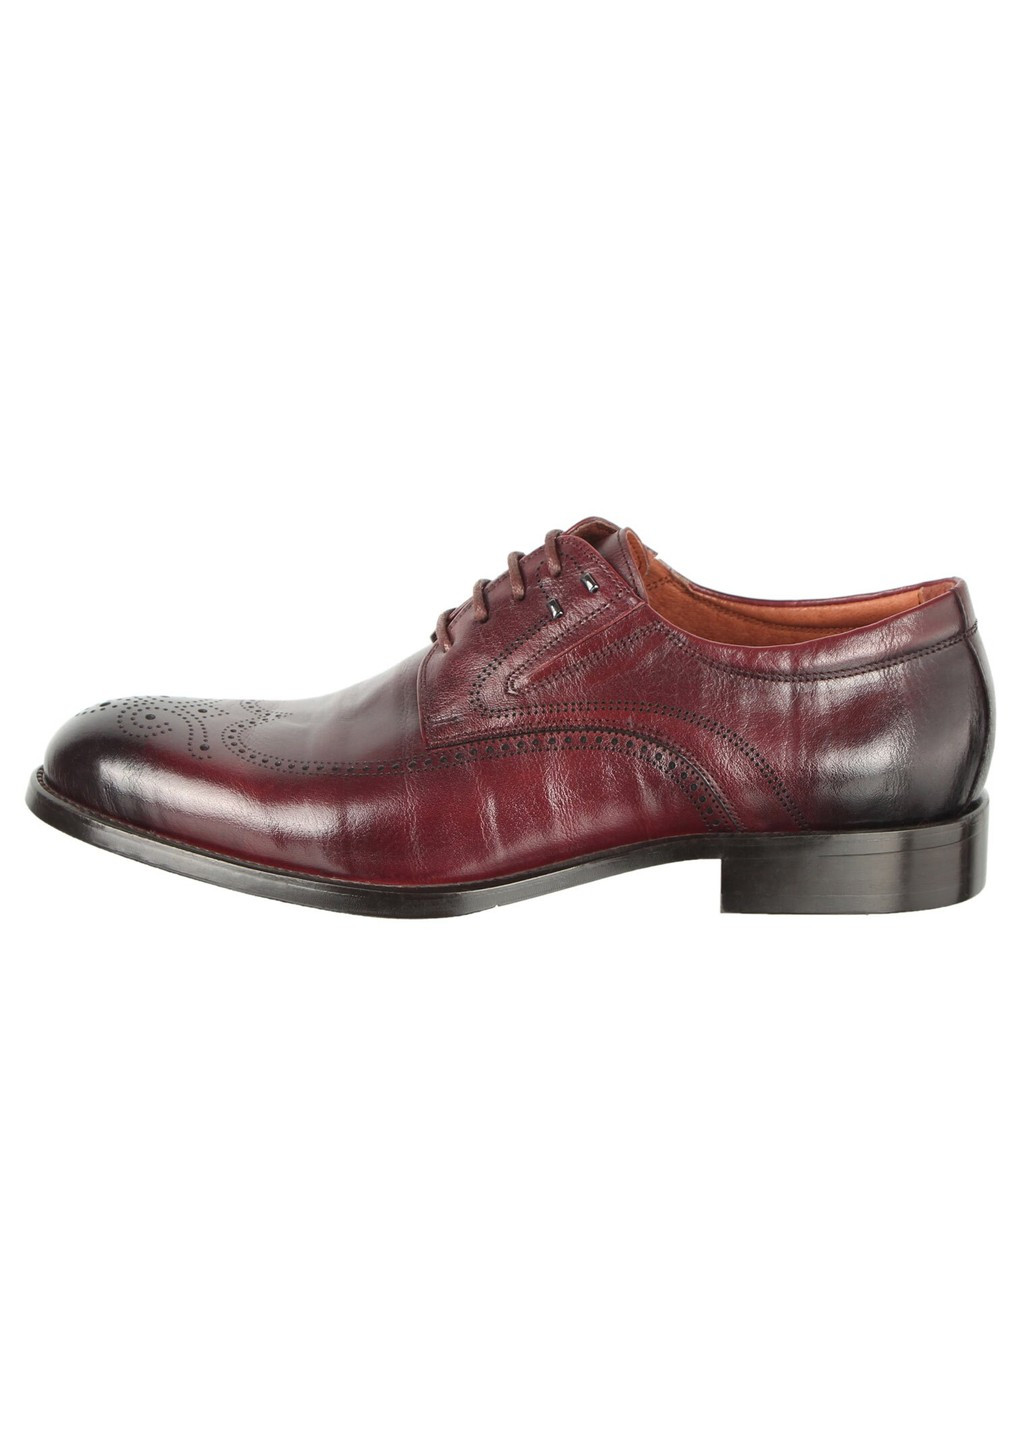 Бордовые мужские классические туфли 196673 Buts на шнурках